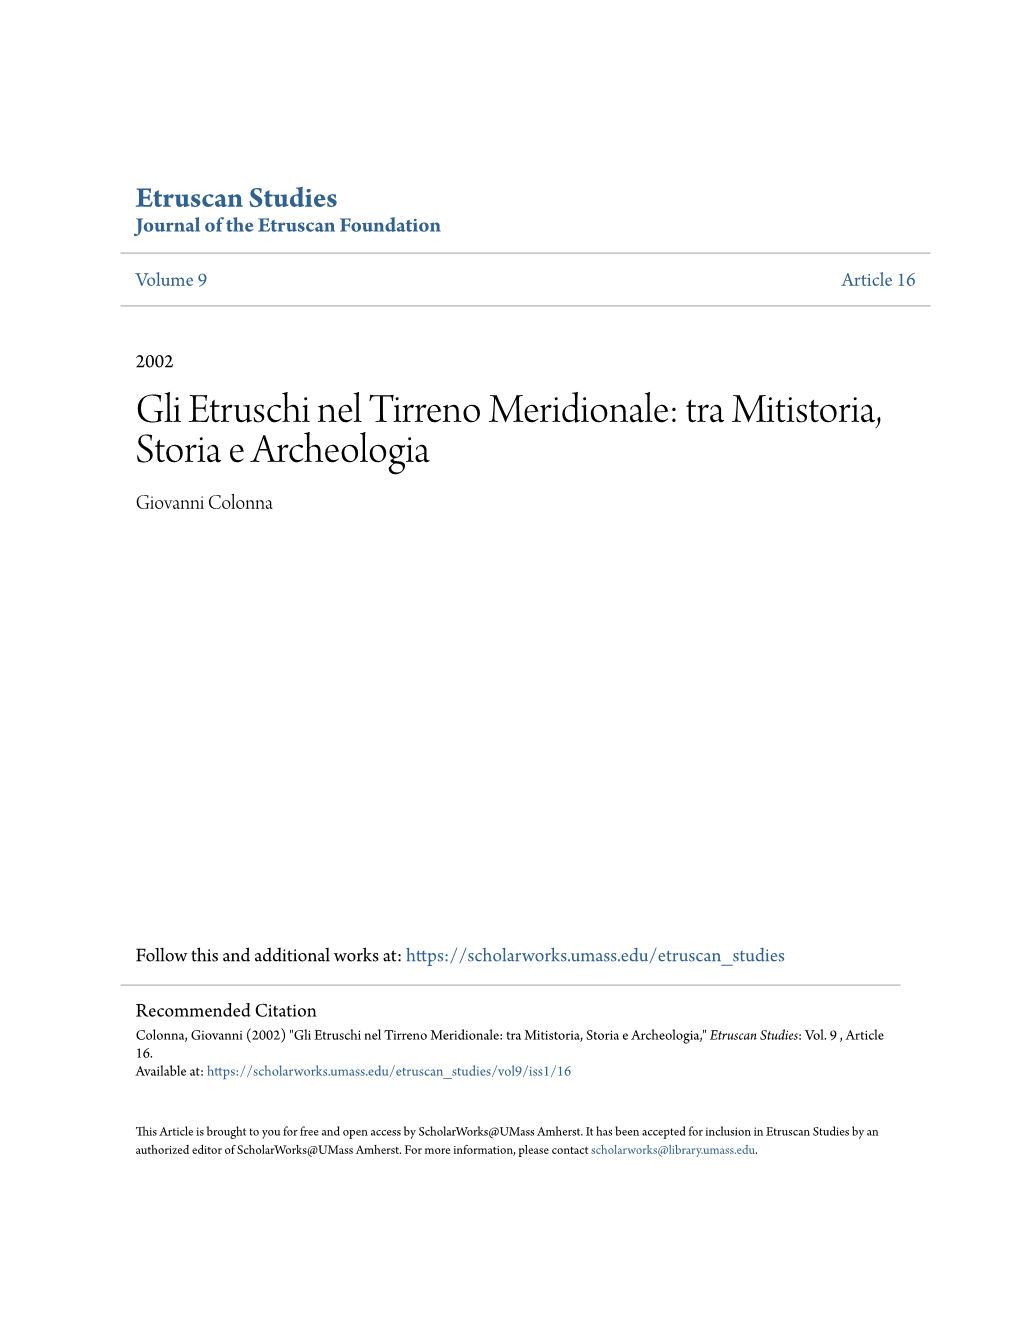 Gli Etruschi Nel Tirreno Meridionale: Tra Mitistoria, Storia E Archeologia Giovanni Colonna